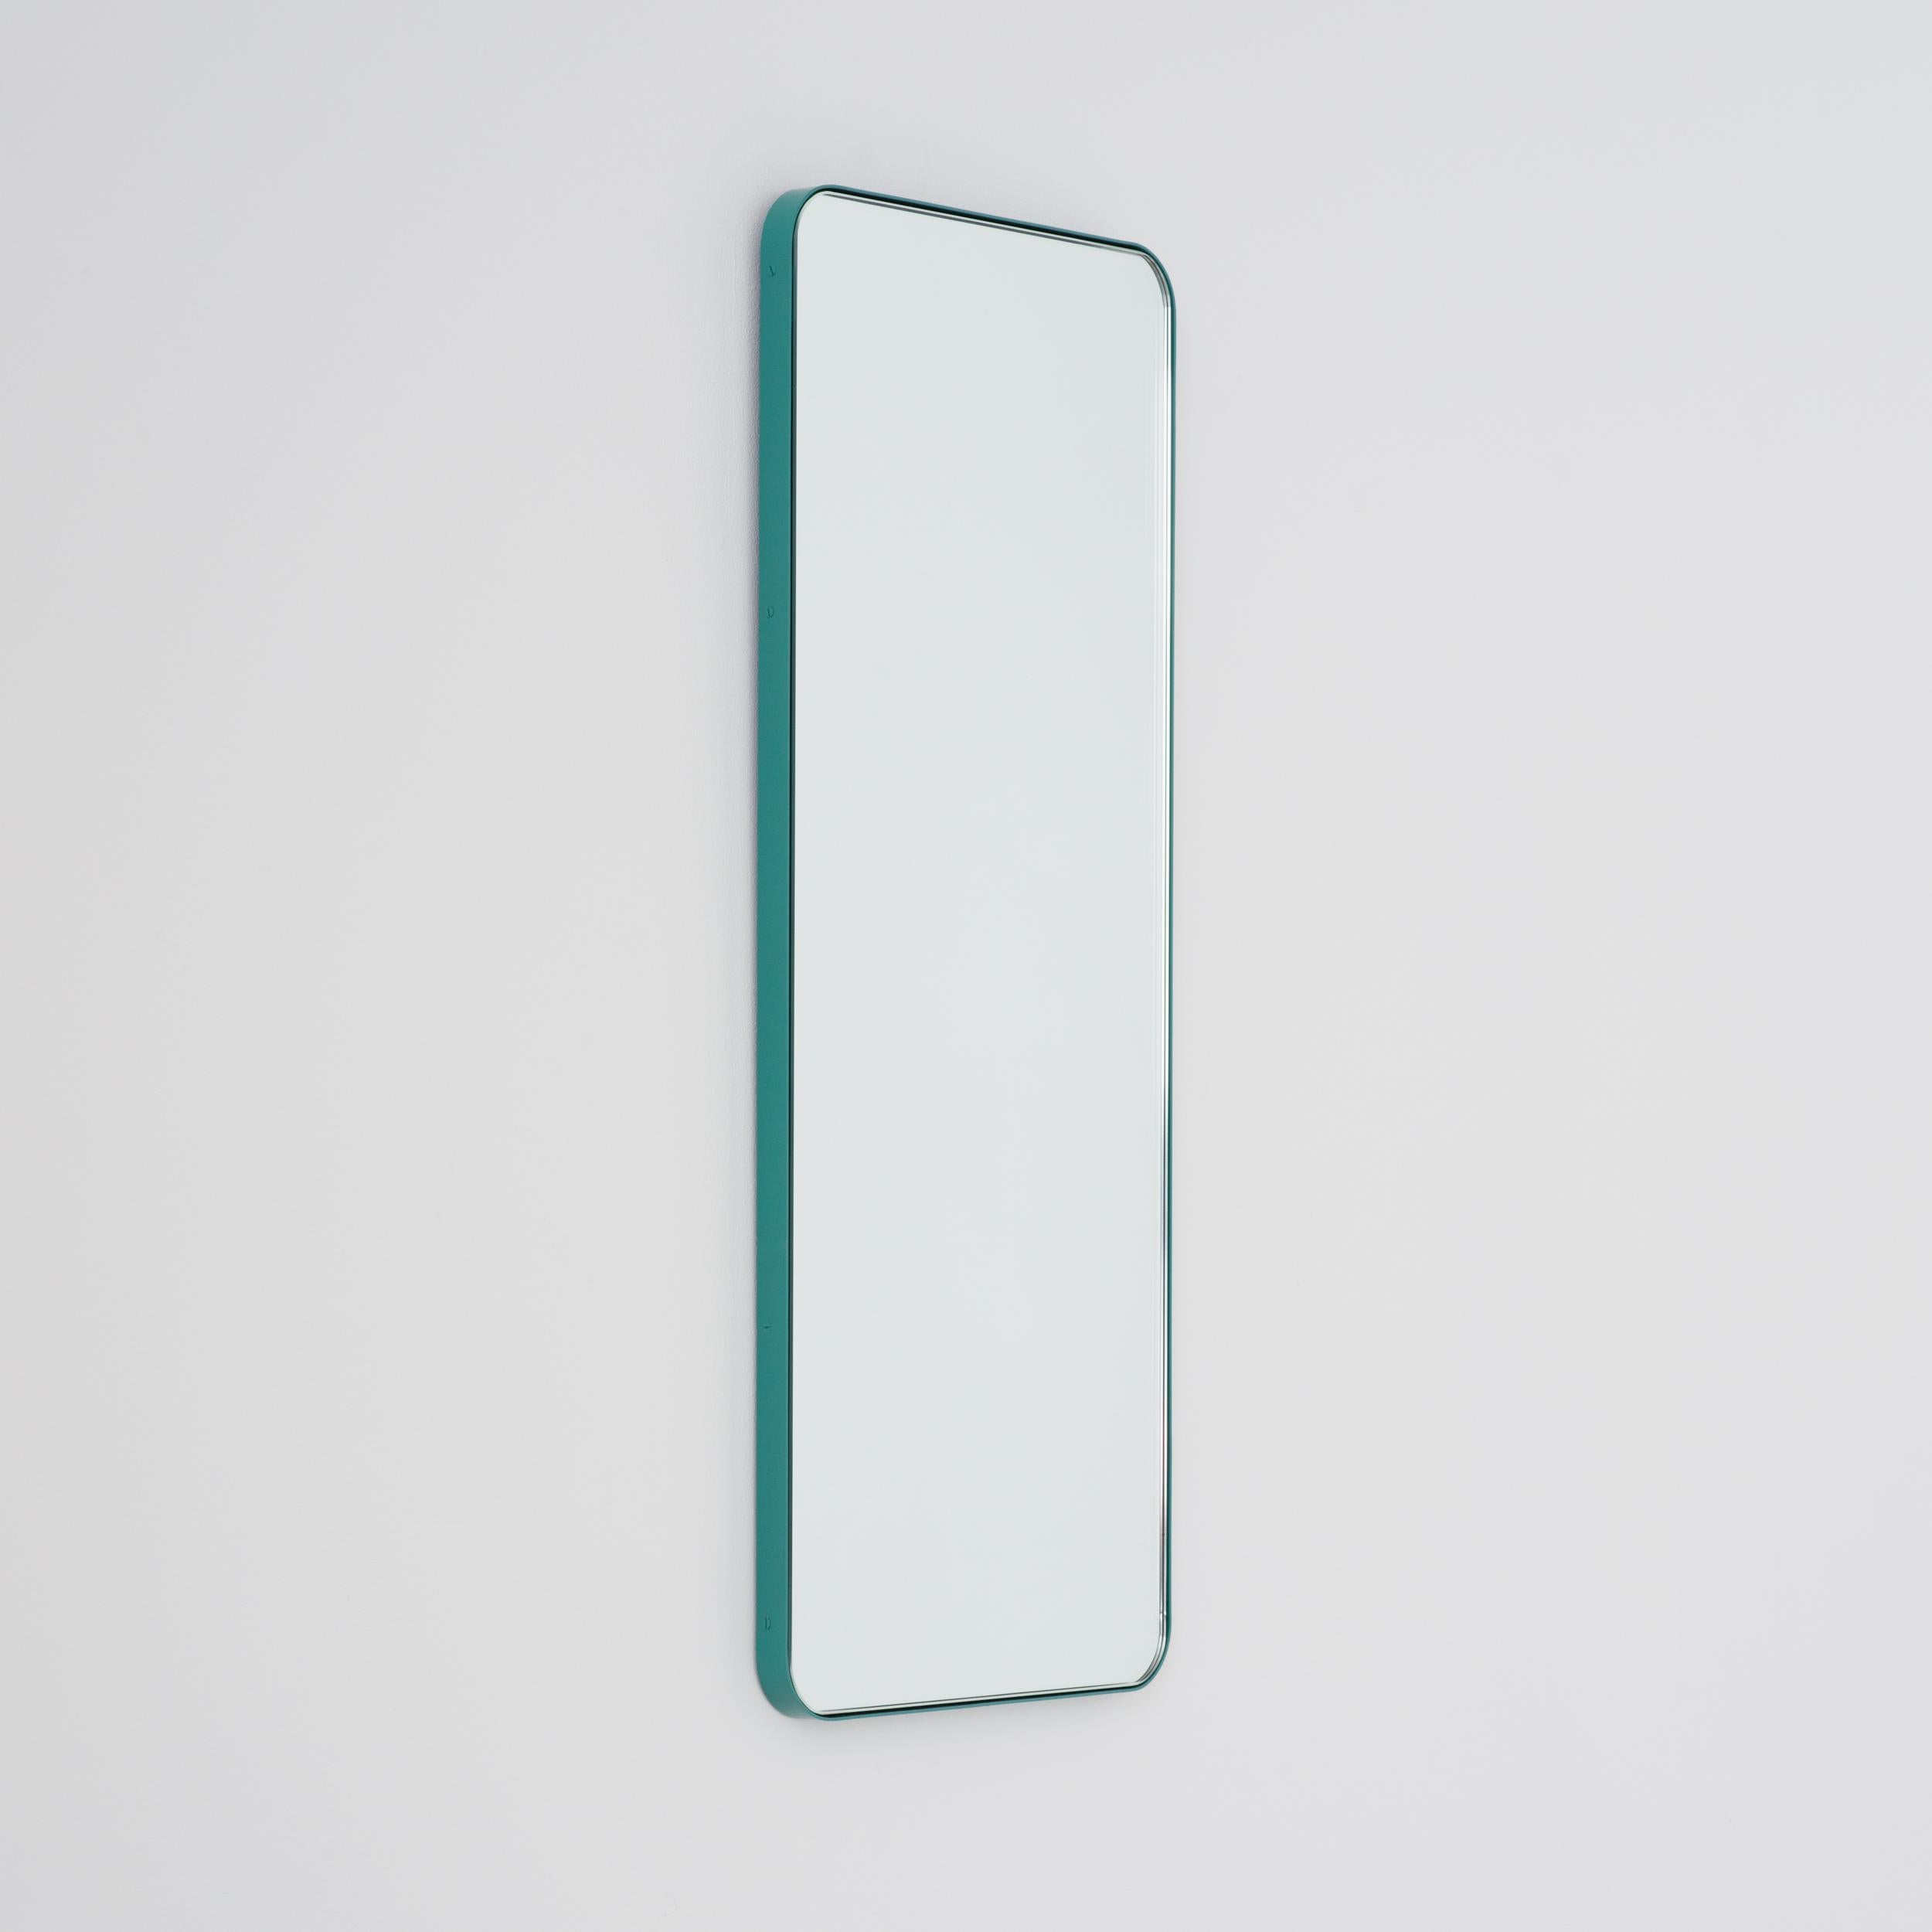 Britannique Miroir rectangulaire Quadris avec cadre turquoise menthe, en stock en vente